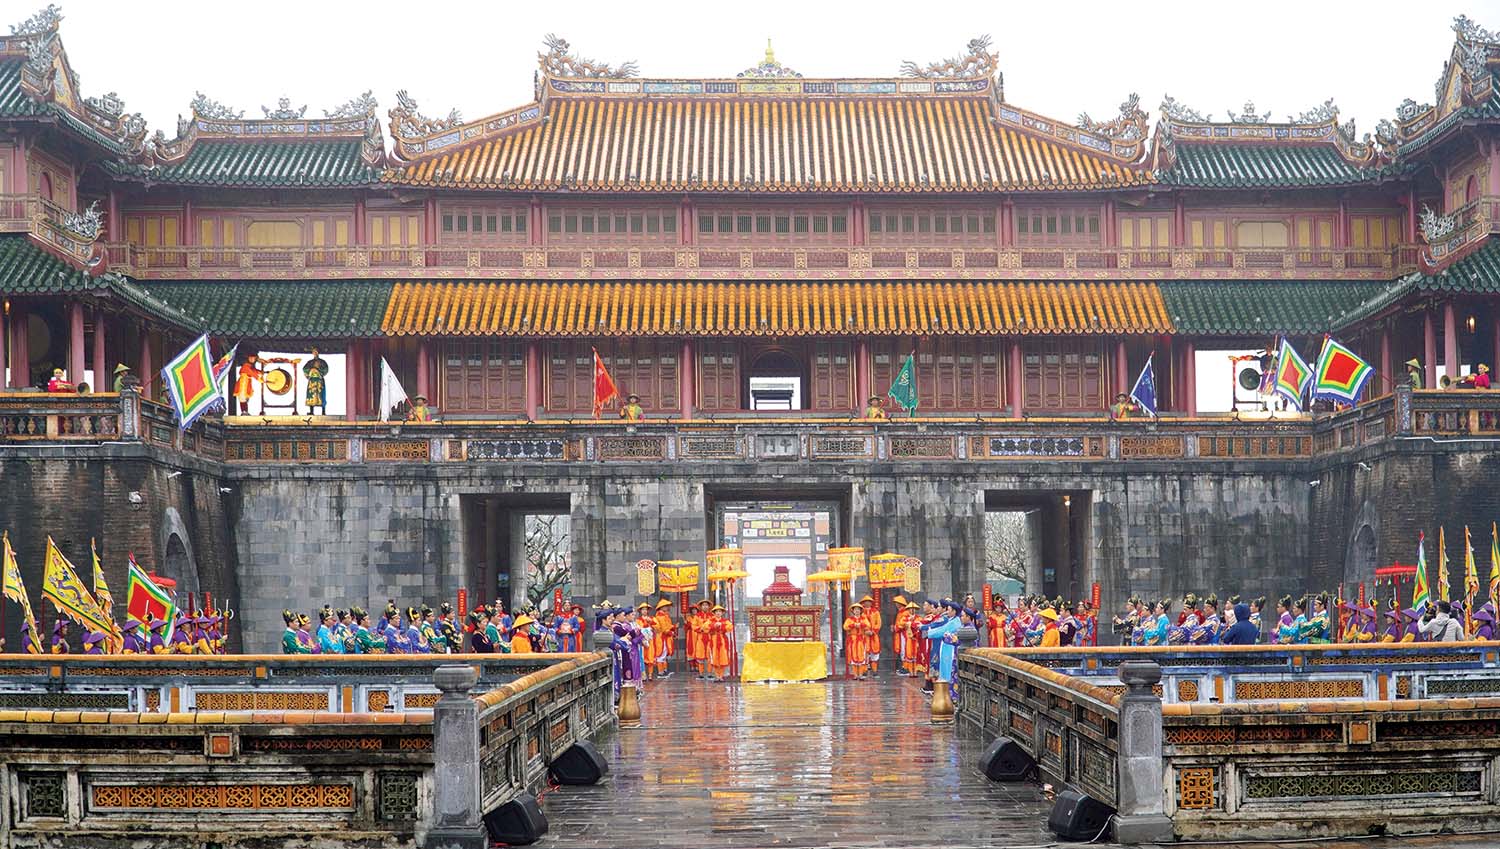 Đại Nội (Kinh thành Huế) là nơi thường xuyên diễn ra các sự kiện văn hóa quan trọng của tỉnh Thừa Thiên Huế